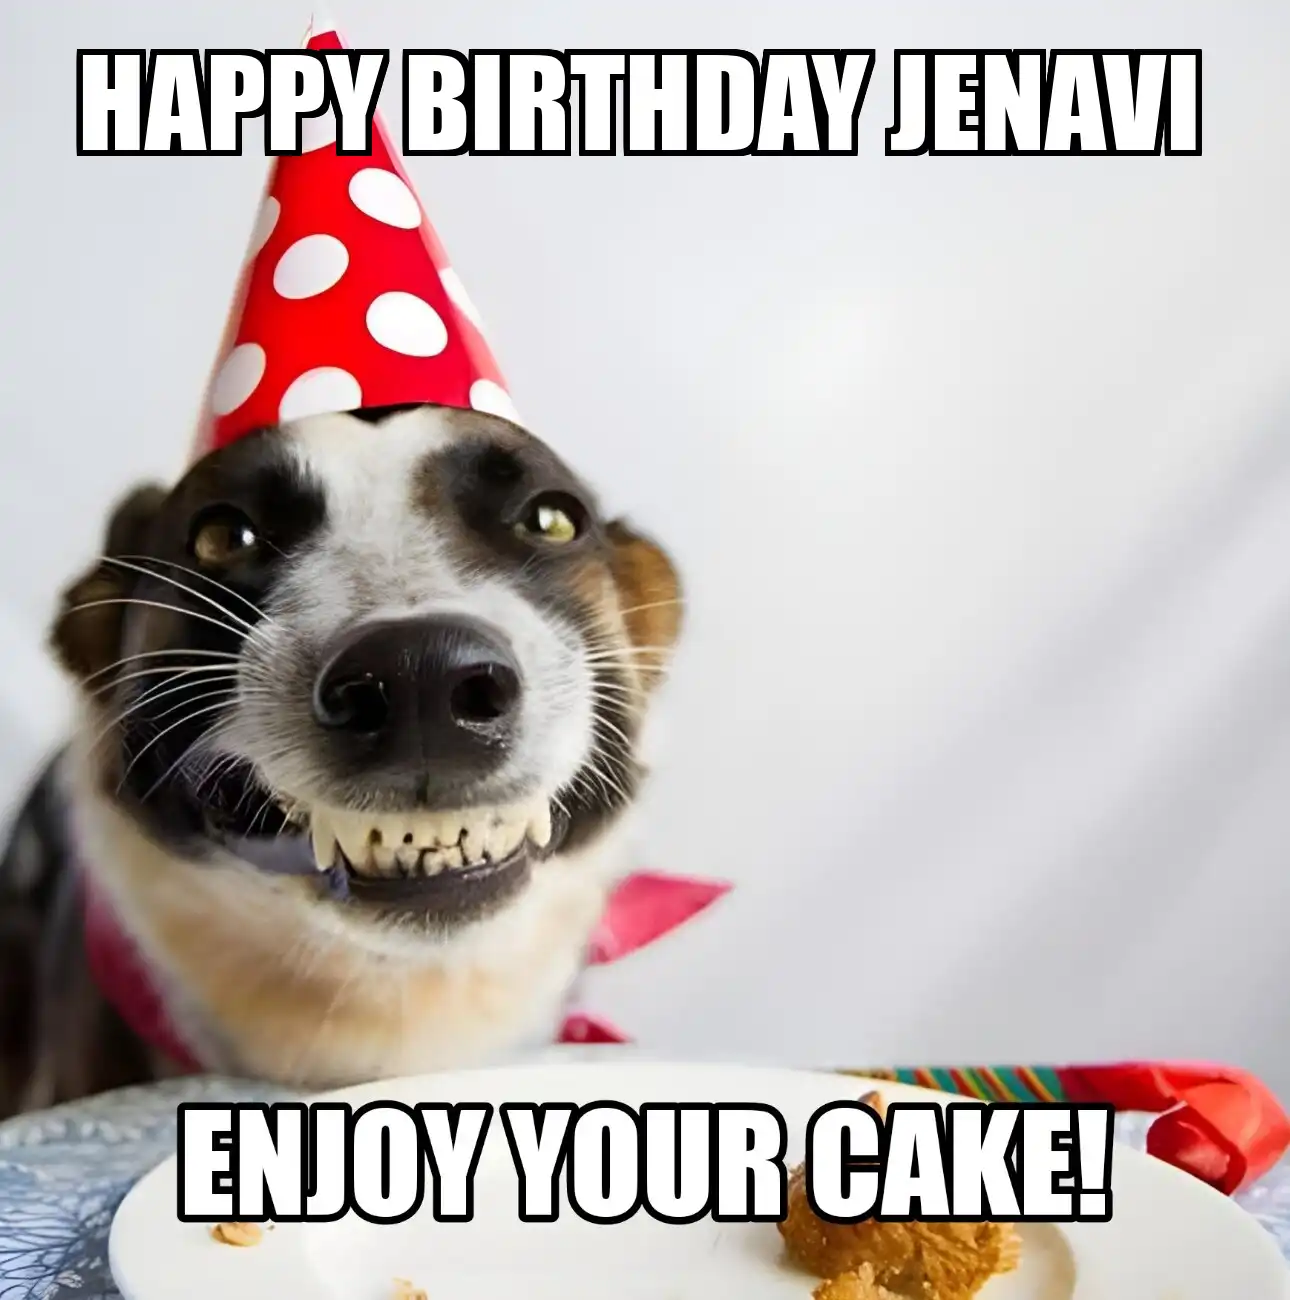 Happy Birthday Jenavi Enjoy Your Cake Dog Meme